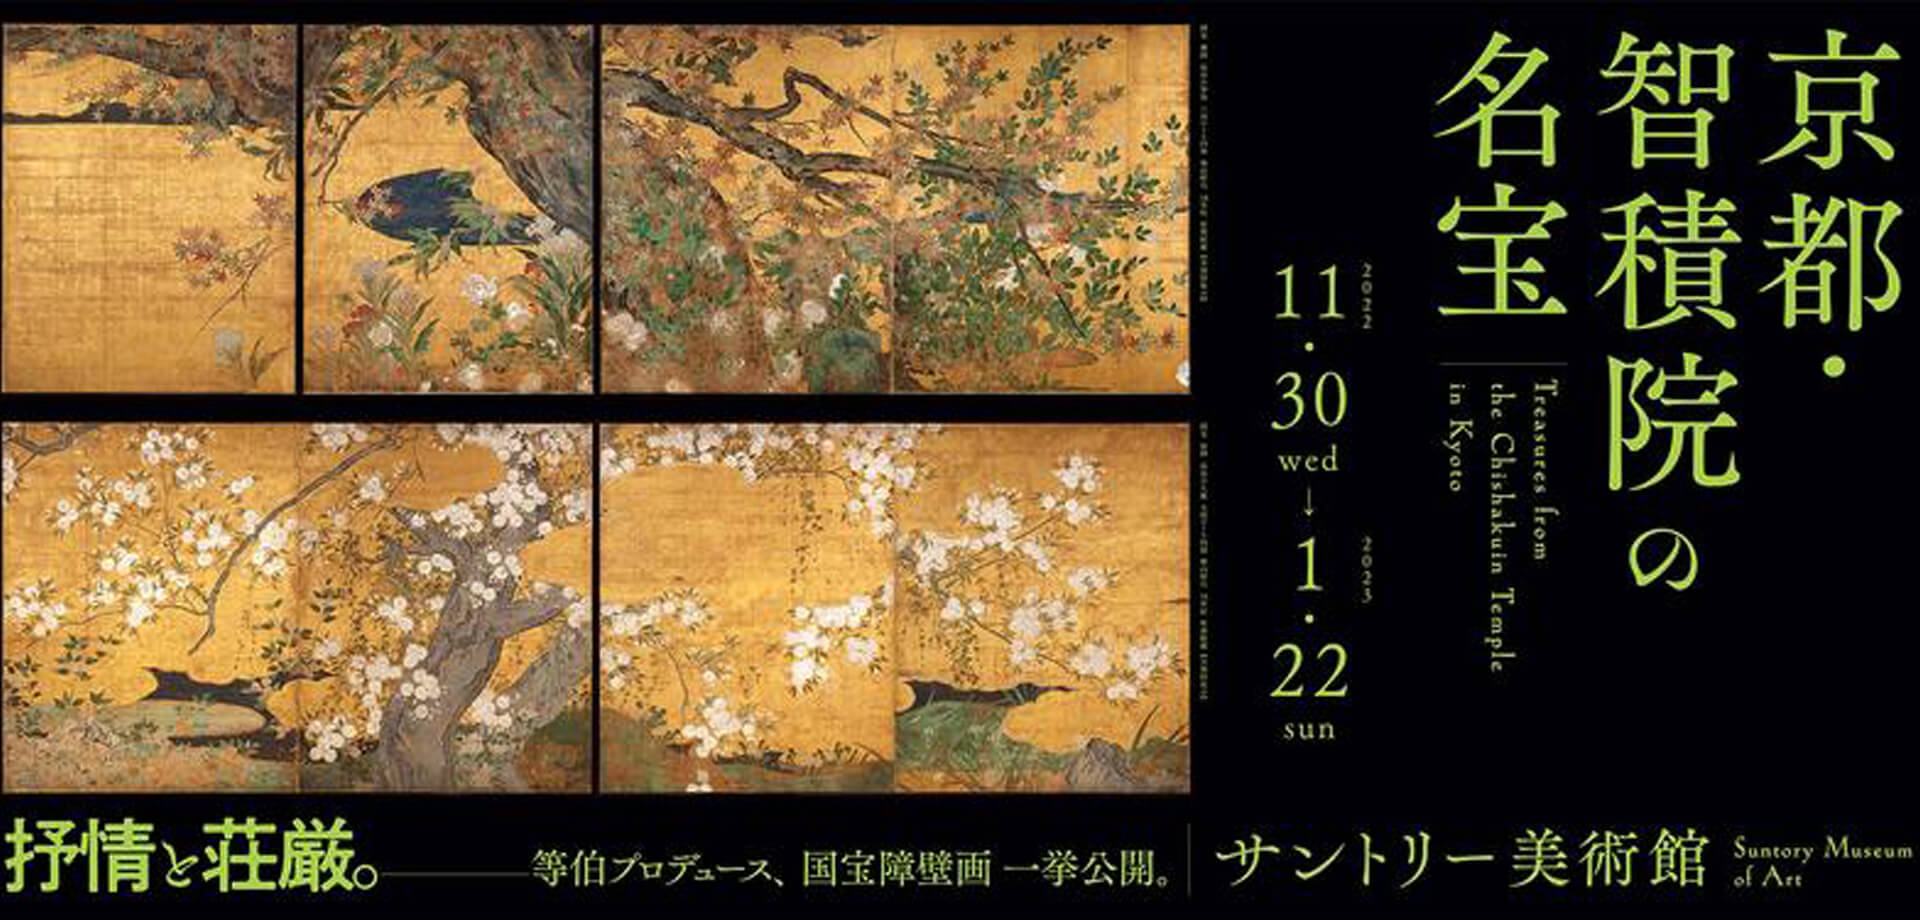 サントリー美術館 「京都・智積院の名宝」 六本木